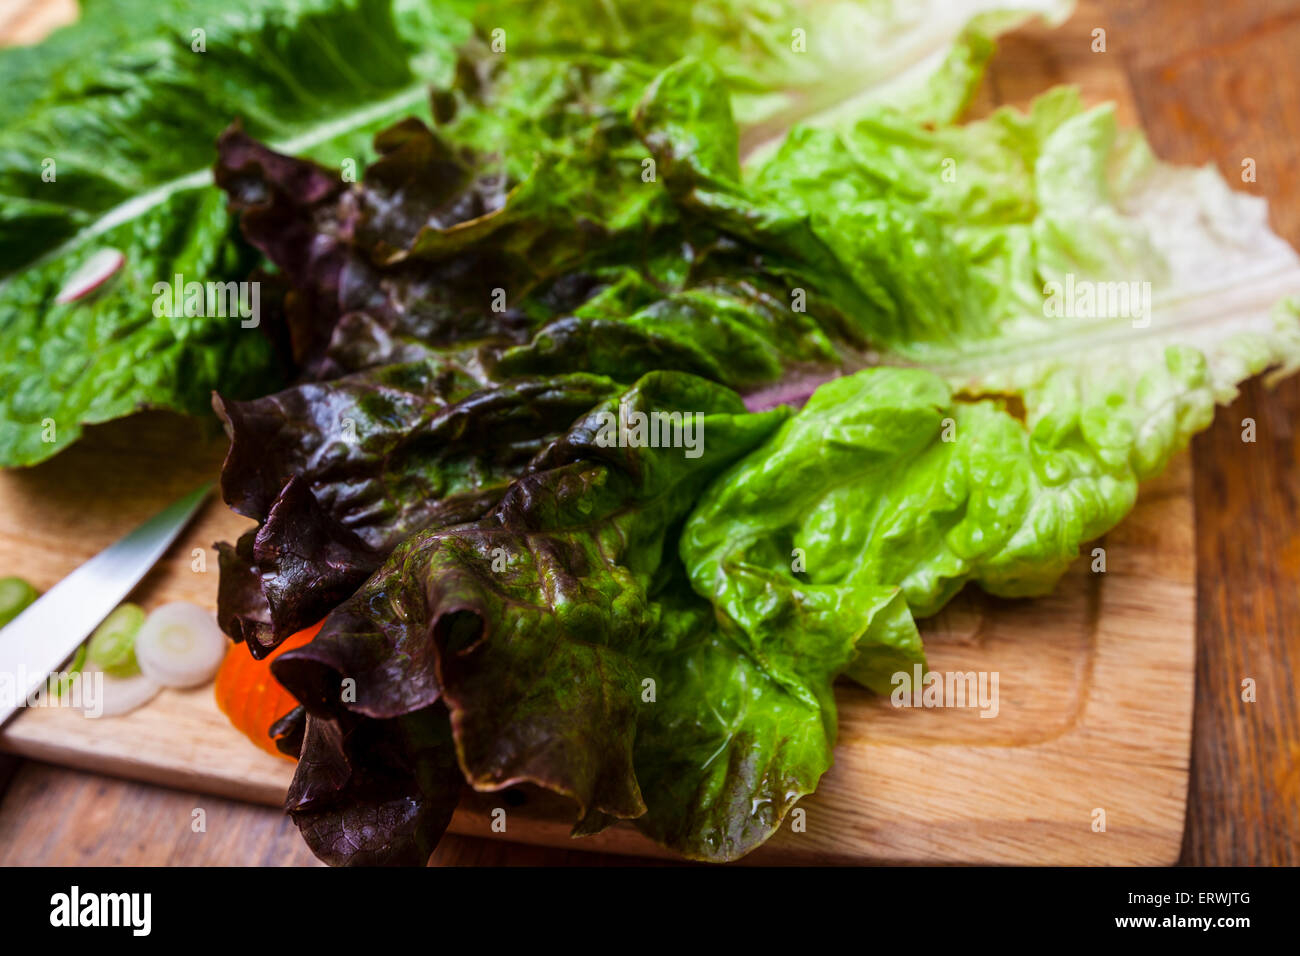 Ingredienti per insalata, Romaine e lattuga rossa con le carote affettate, ravanelli e cipollotti su un tagliere Foto Stock